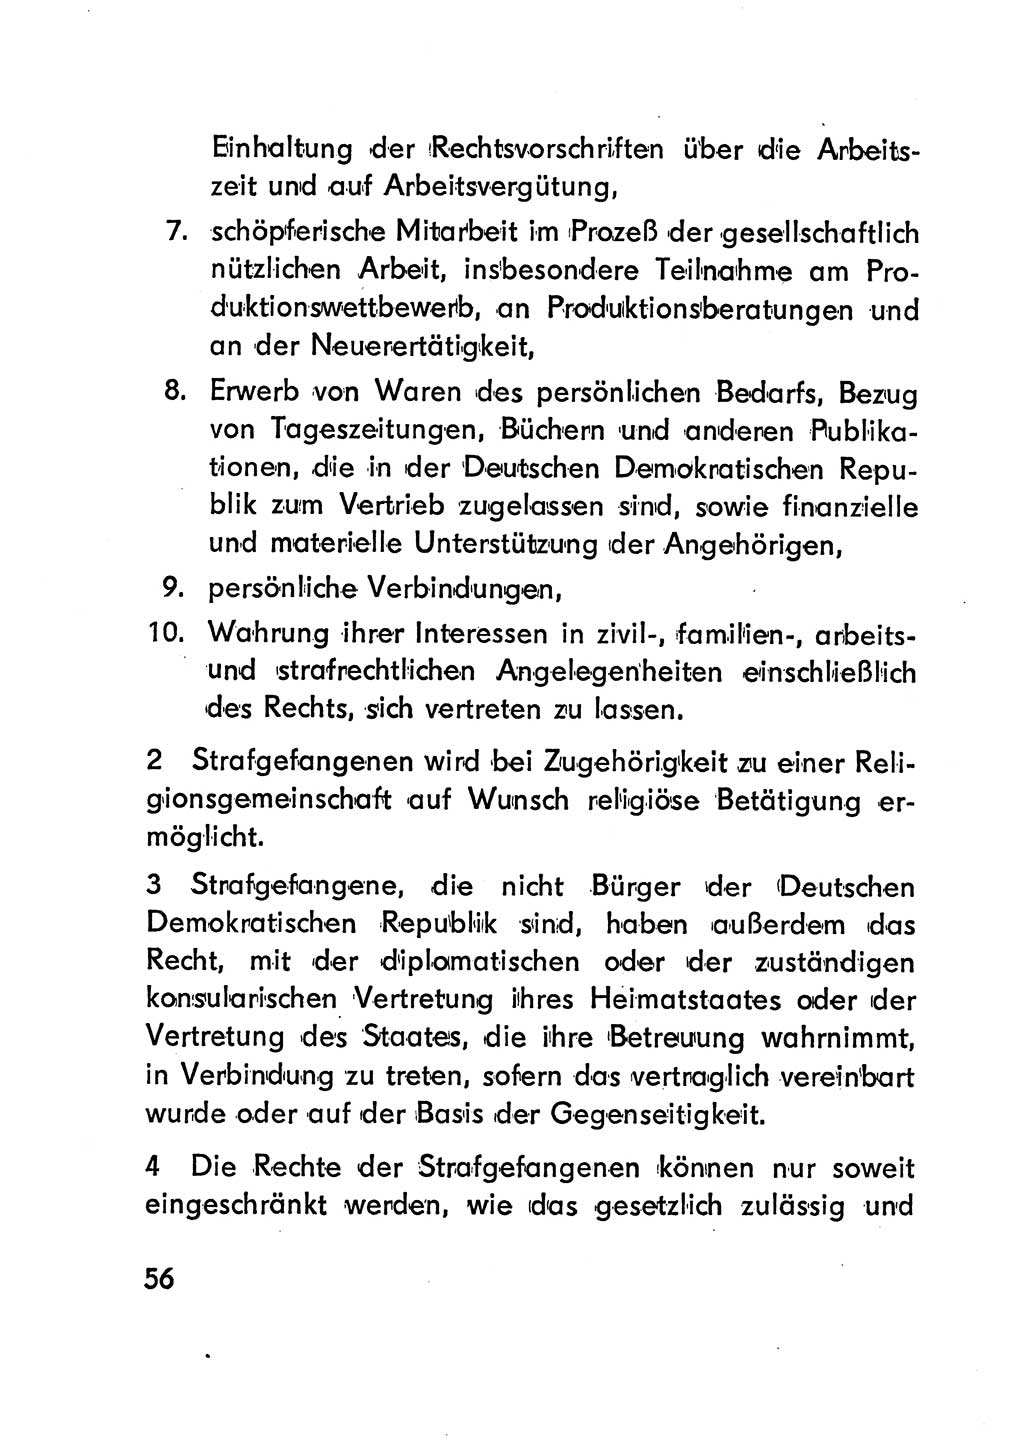 Gesetz über den Vollzug der Strafen mit Freiheitsentzug (Strafvollzugsgesetz) - StVG - [Deutsche Demokratische Republik (DDR)] 1977, Seite 56 (StVG DDR 1977, S. 56)